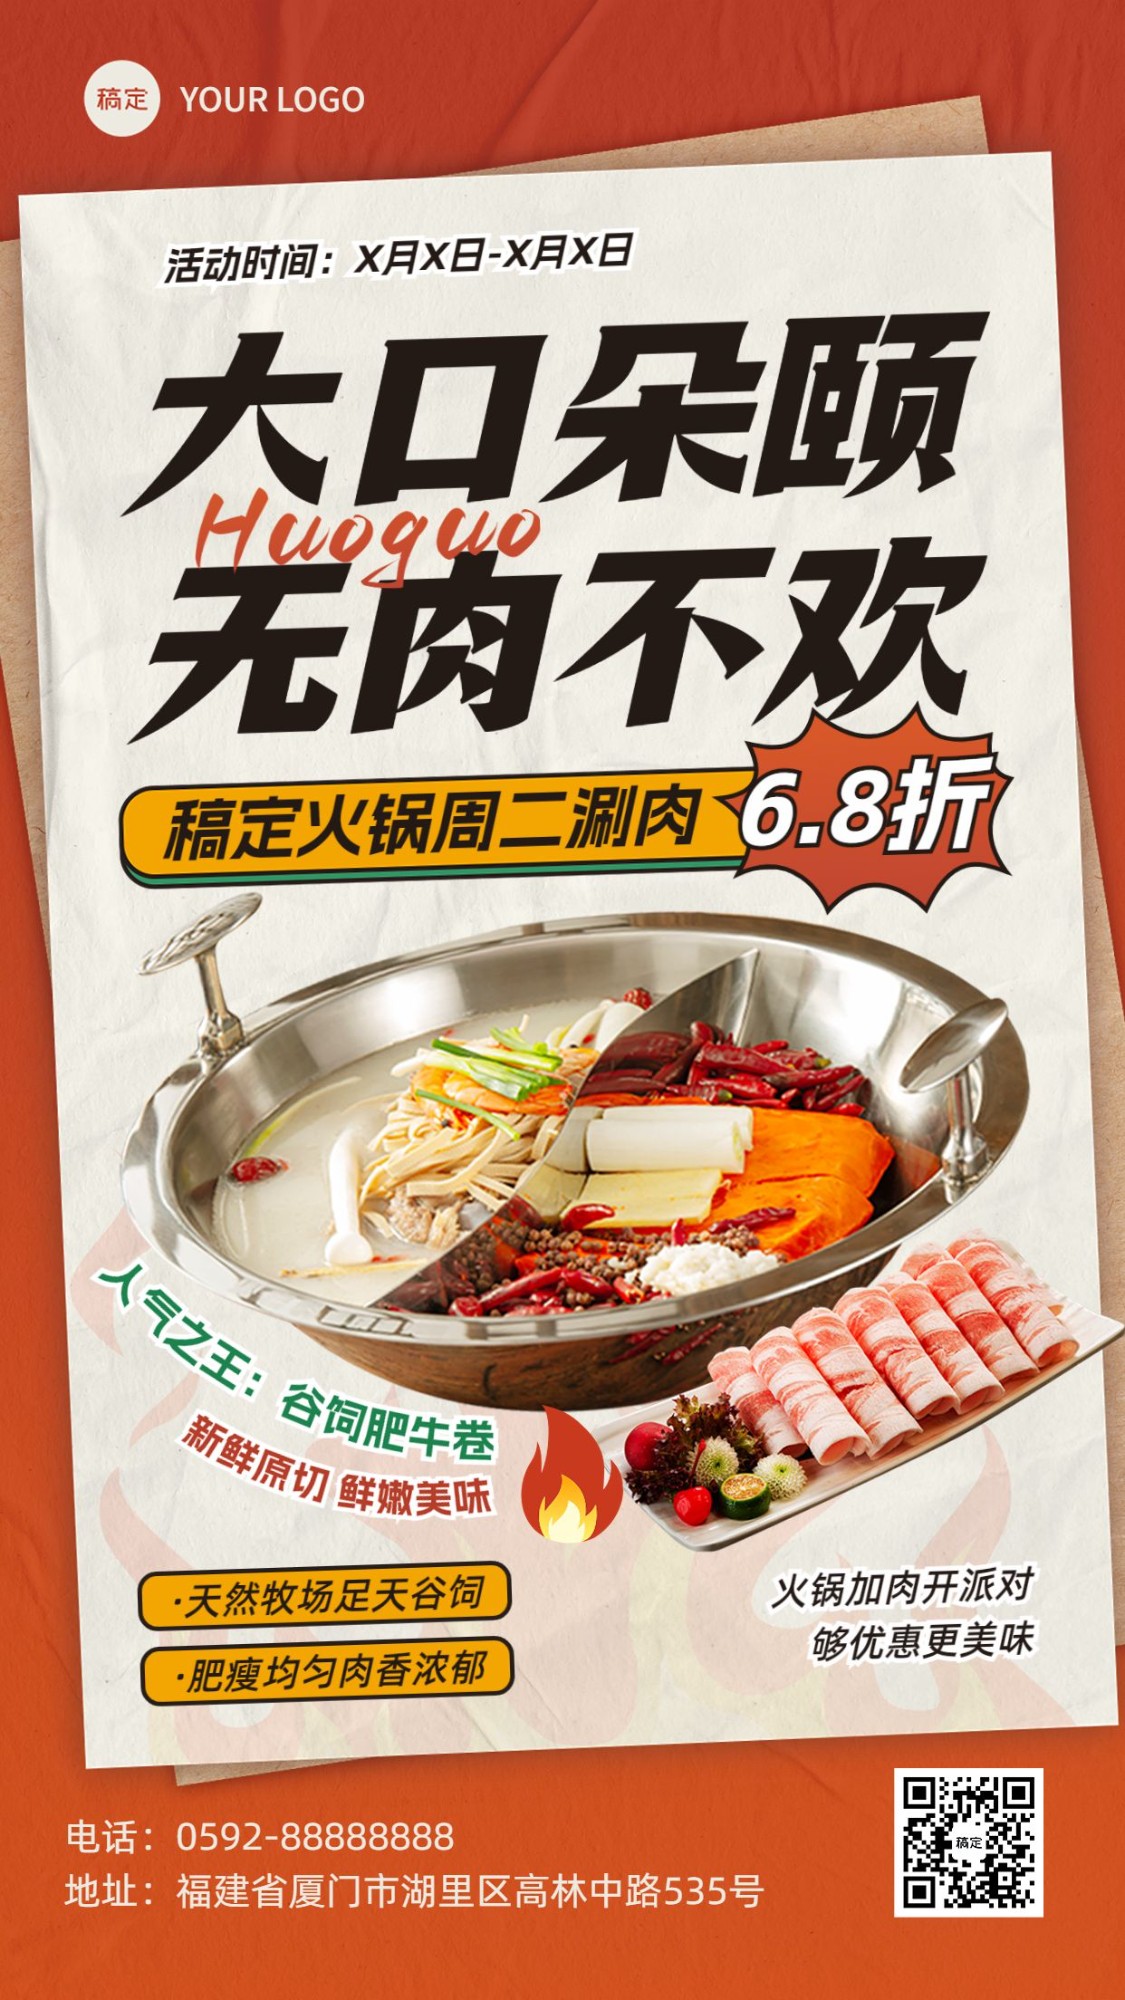 餐饮美食火锅烤肉周主题活动营销全屏竖版海报预览效果